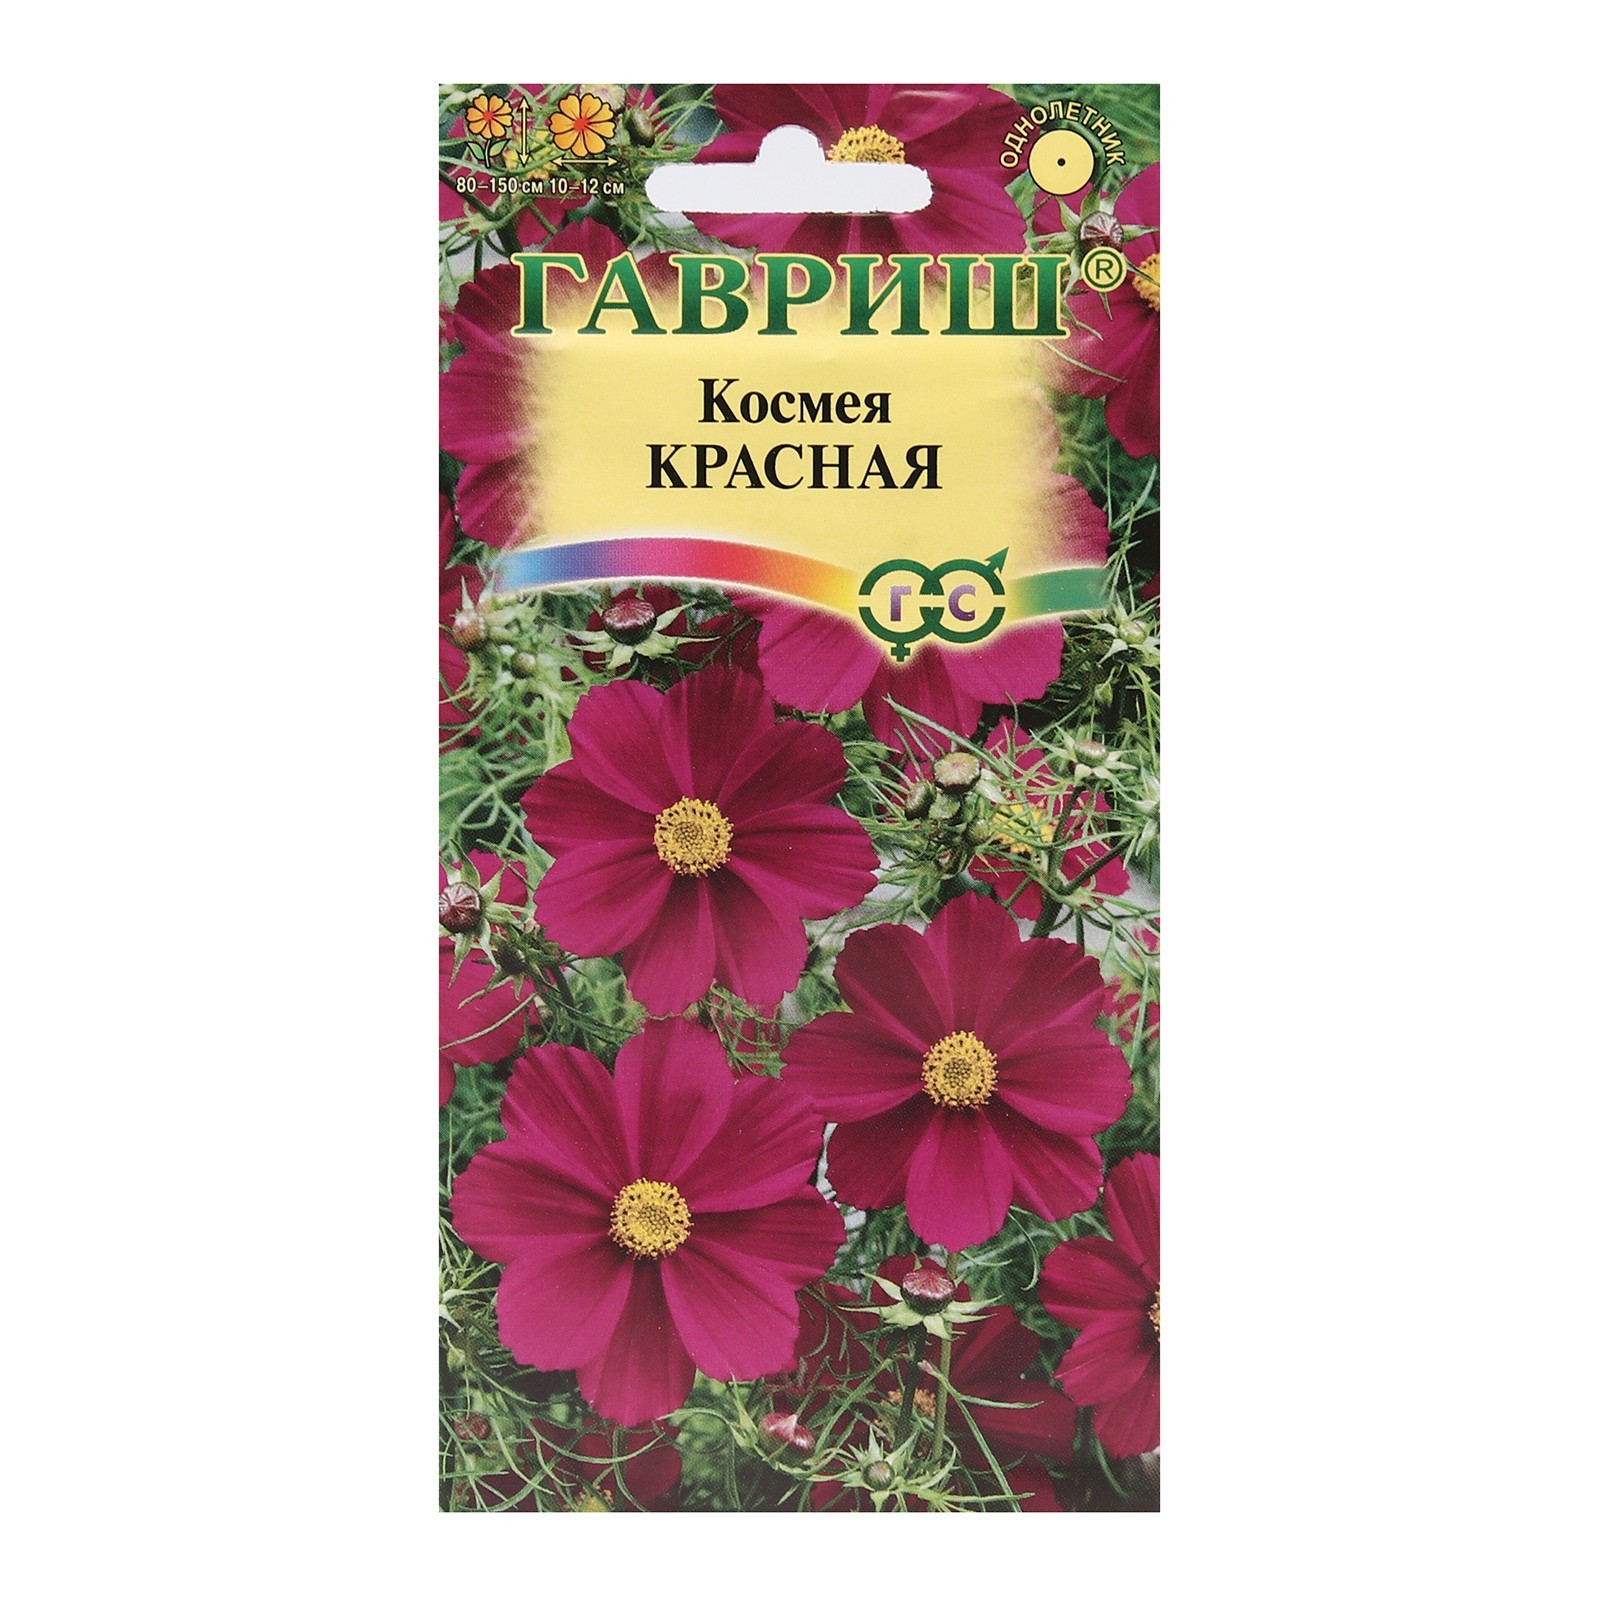 Семена цветов Космея Красная, 0,3 г (5462612) - Купить по цене от 15.00  руб. | Интернет магазин SIMA-LAND.RU